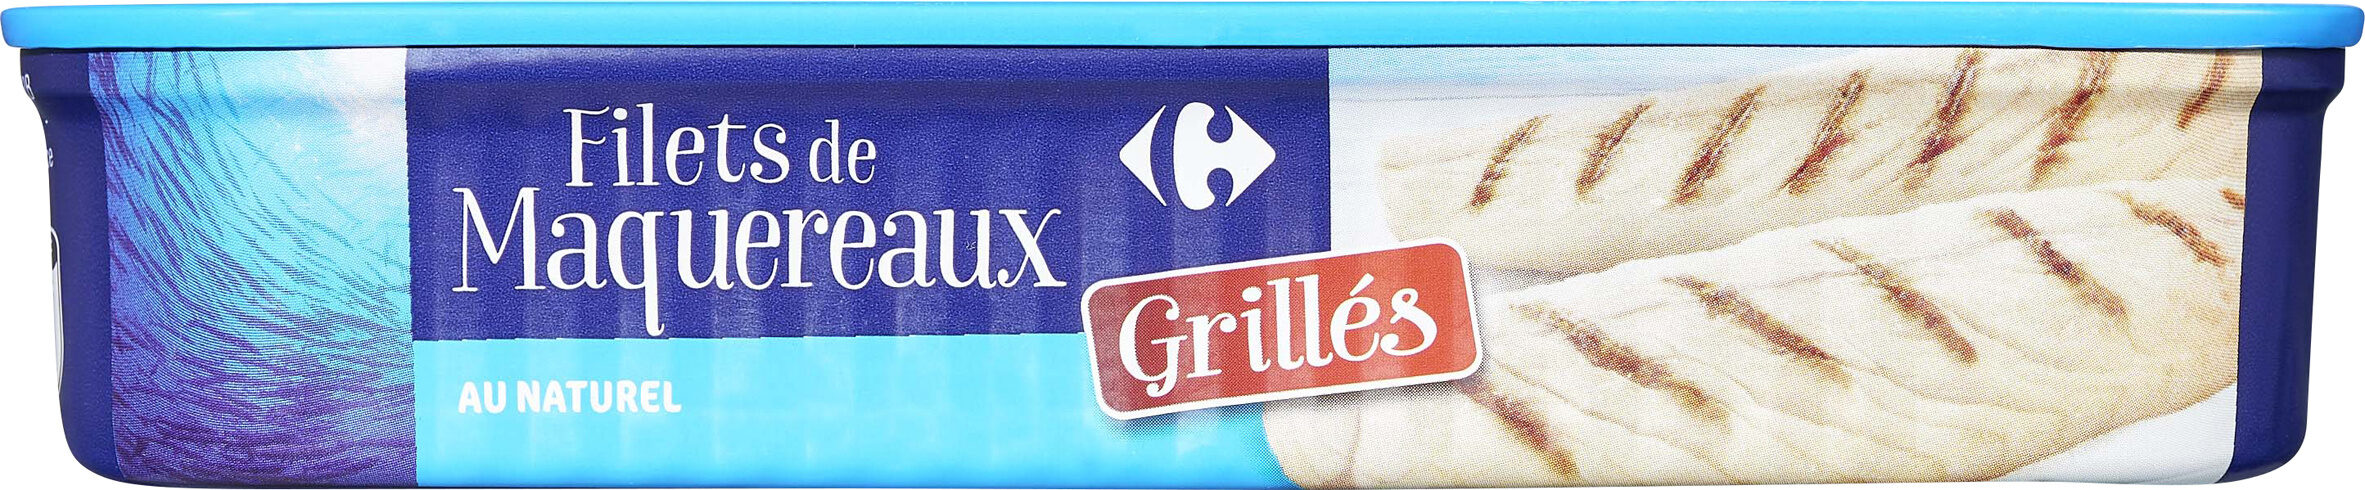 Filet de Maquereaux grillés - Product - fr